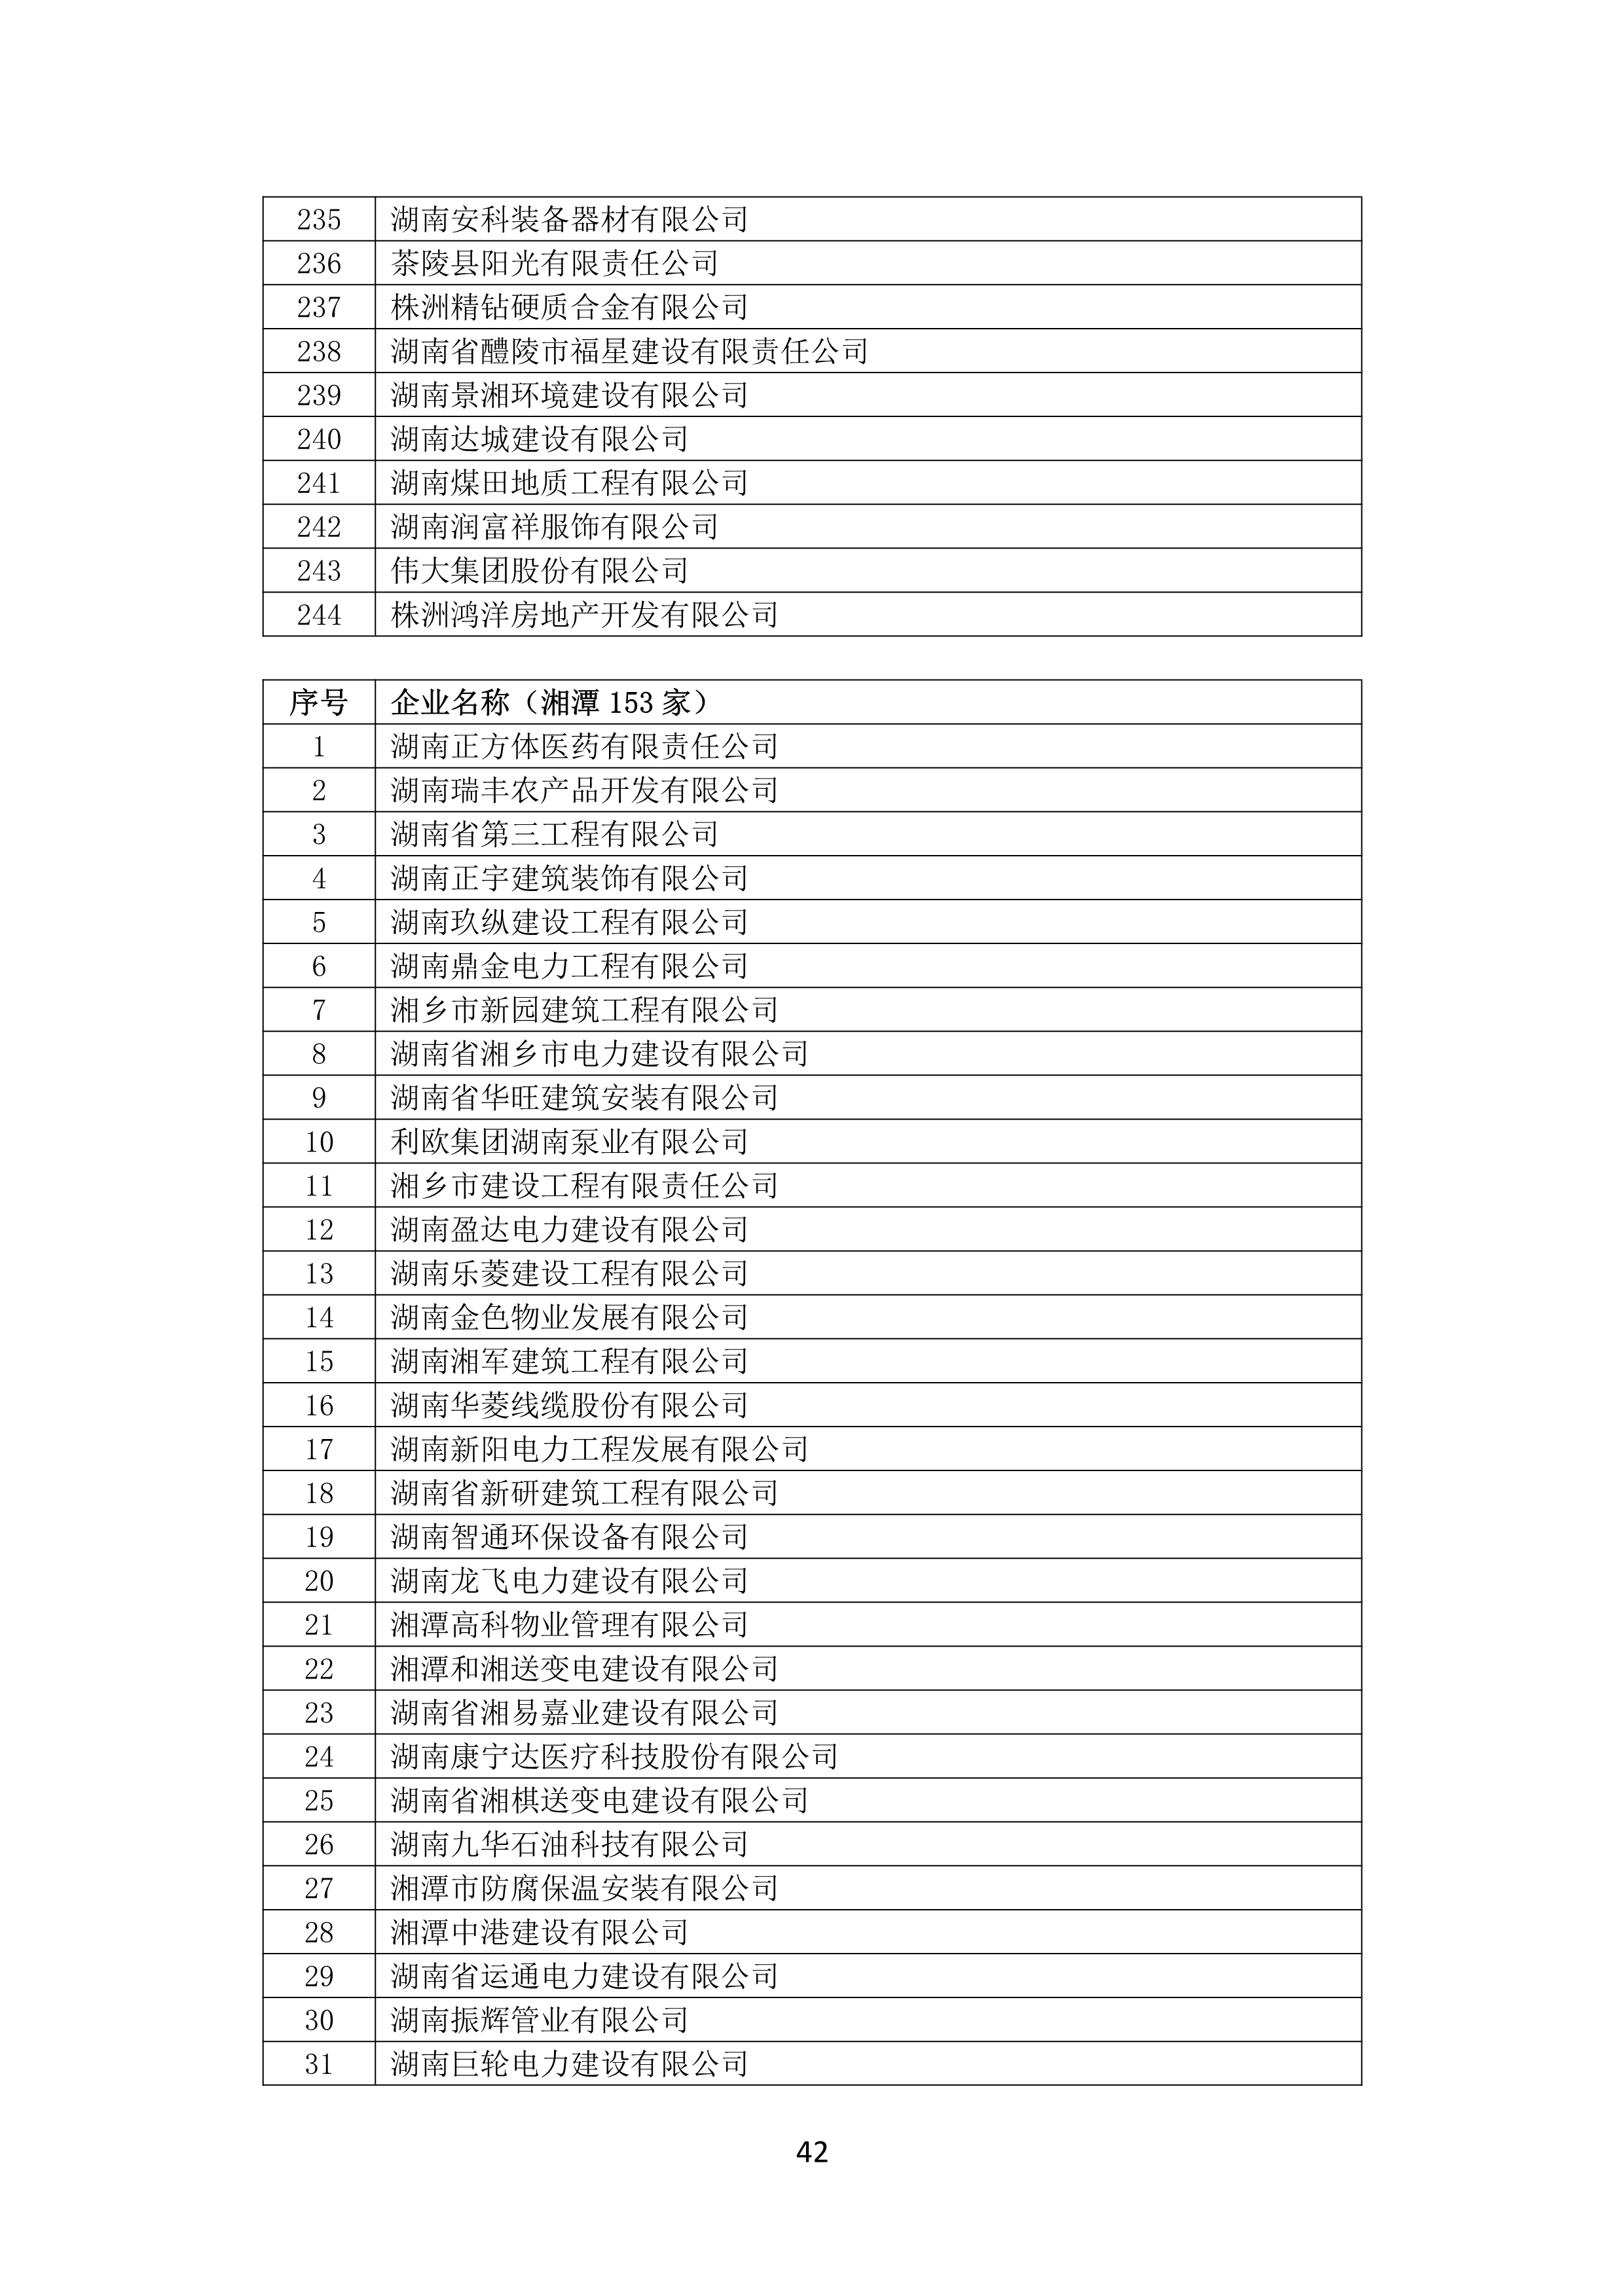 2021 年(nián)度湖南省守合同重信用企業名單_43.png